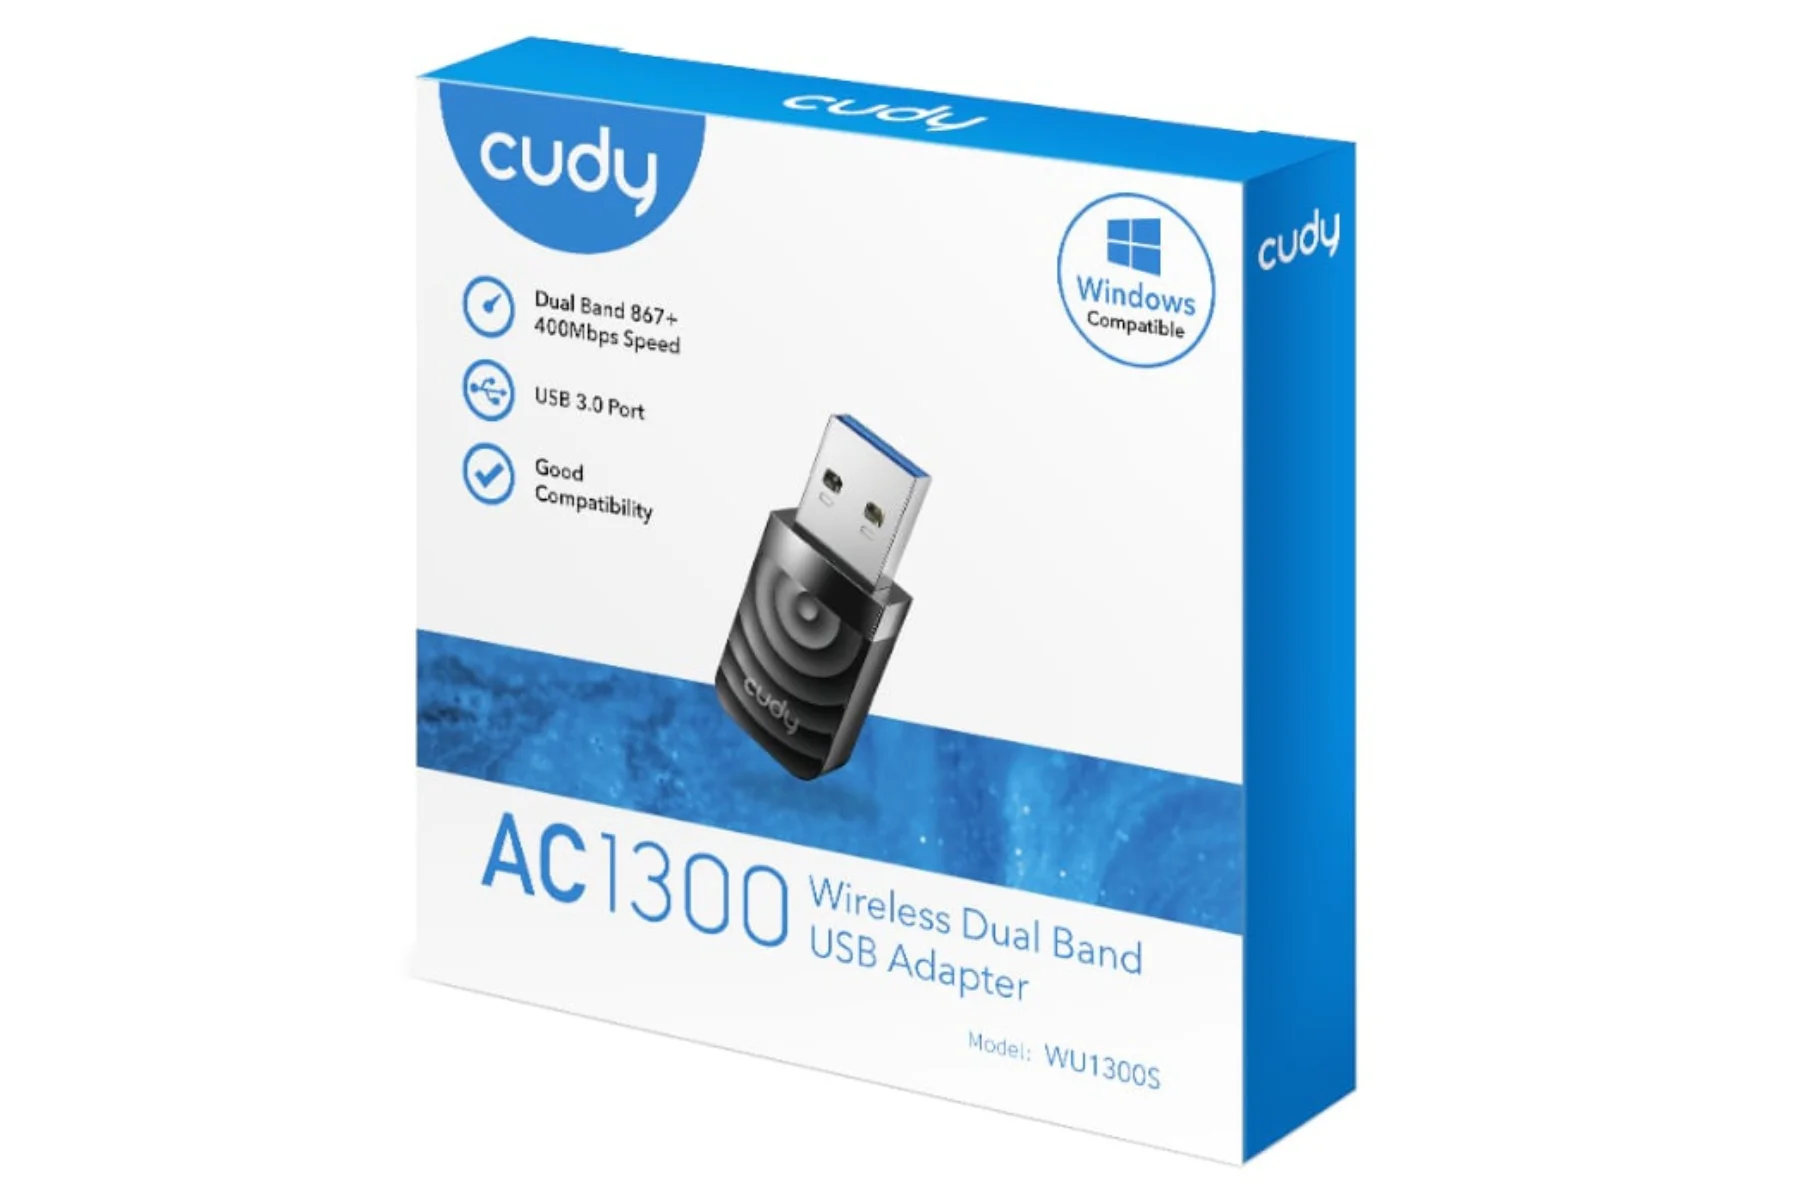 USB adaptér Cudy AC1300 Wi-Fi High Gain USB 3.0 stabilne pripojenie